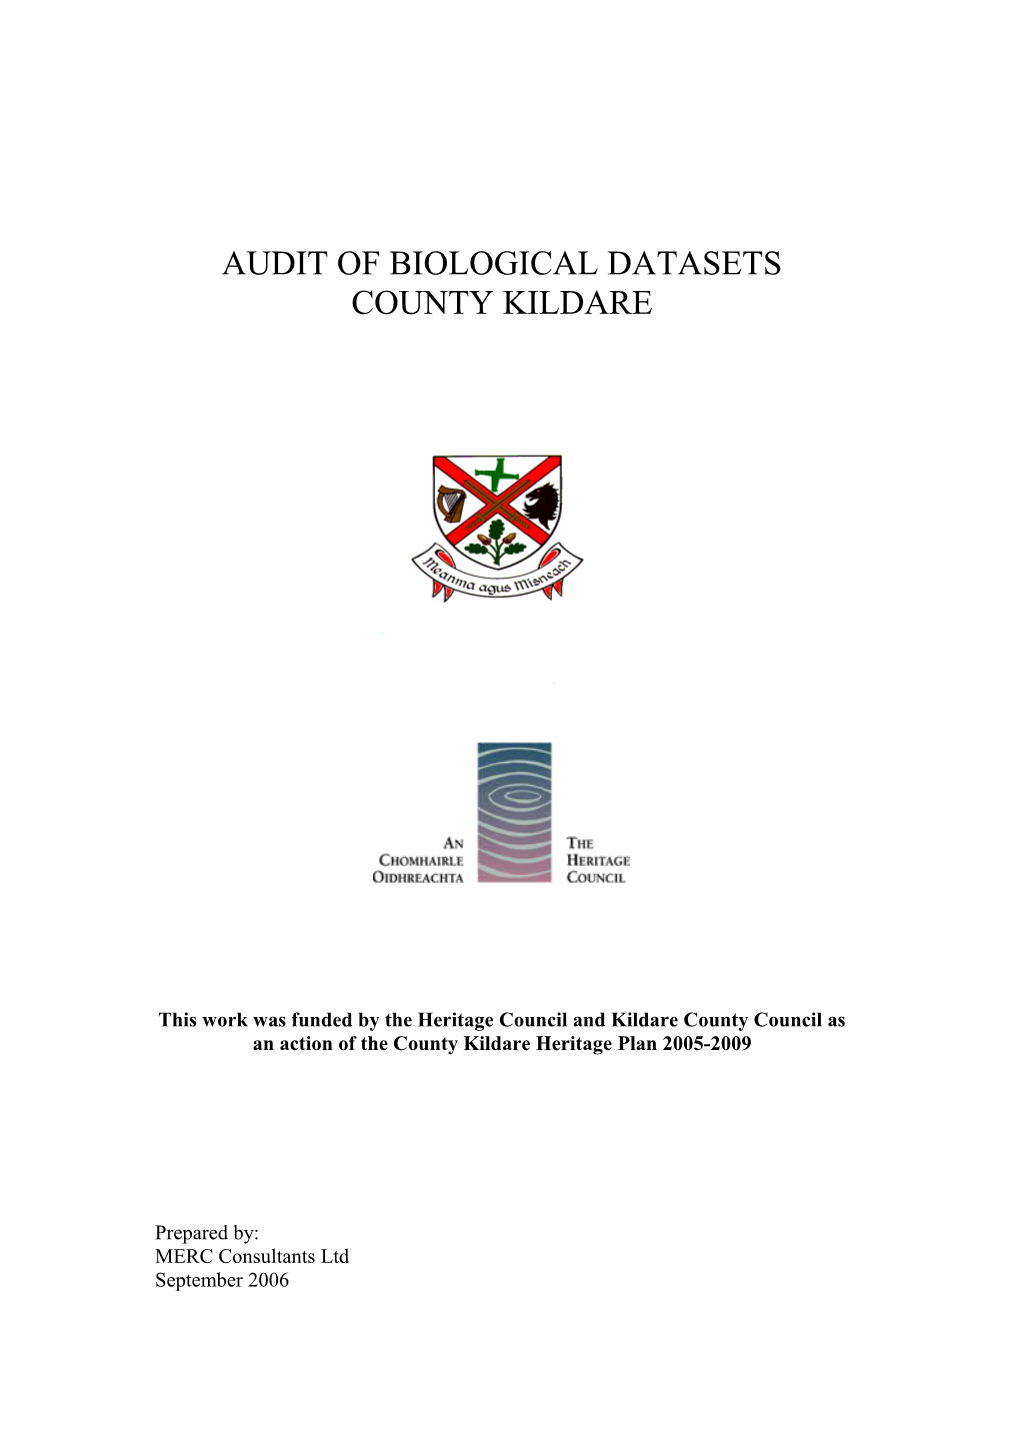 Audit of Biological Datasets